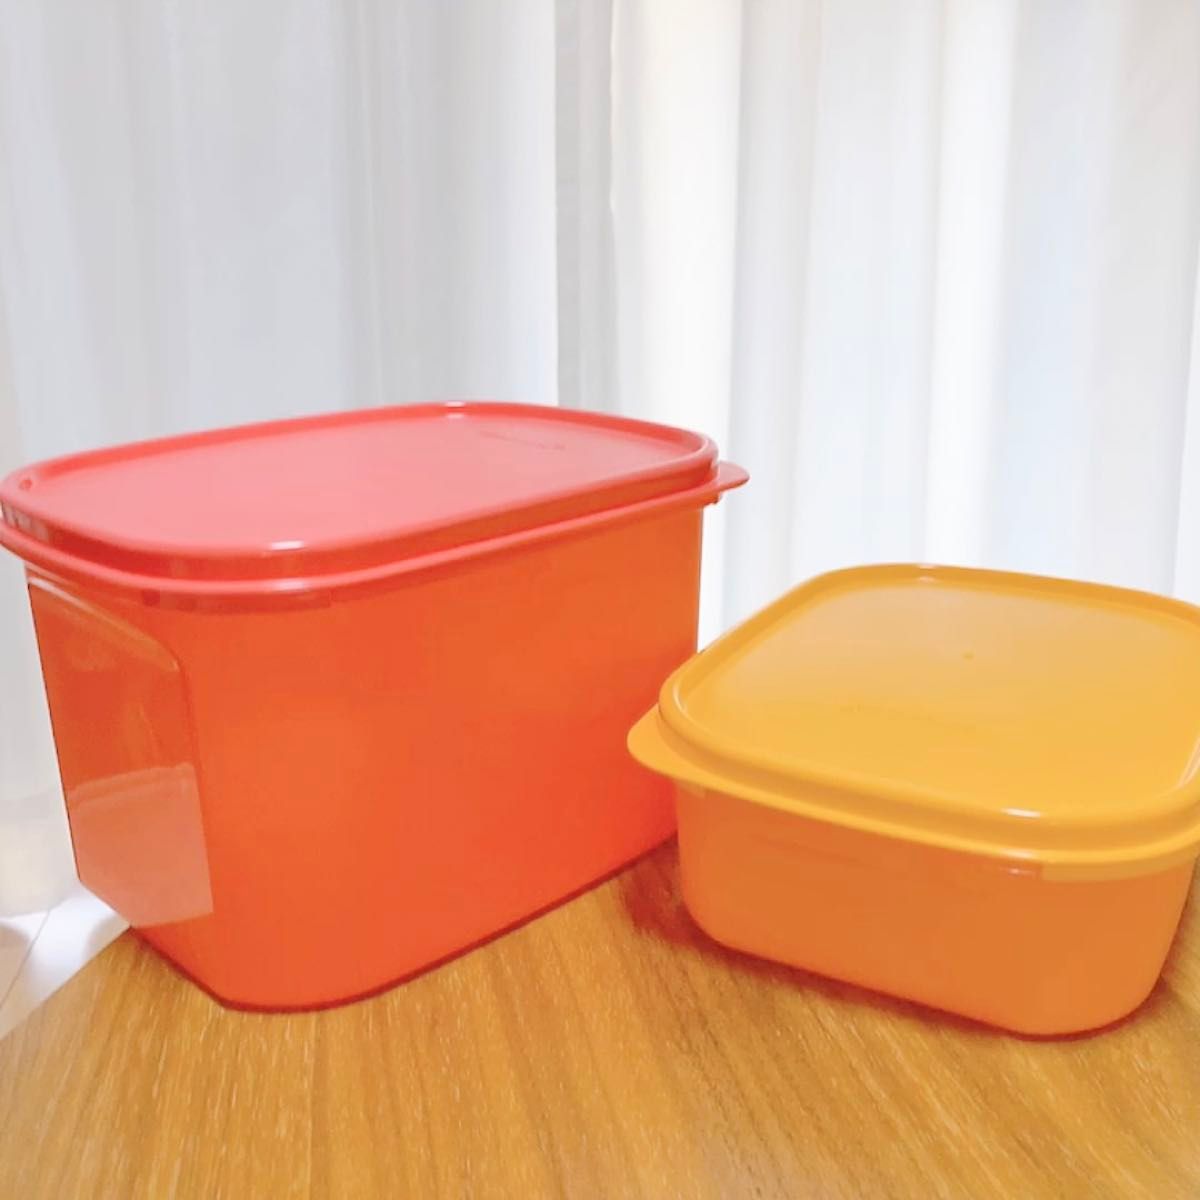 新品 未使用 タッパーウェア 大 2個セット サーモンピンク オレンジ タッパーウエア tupperware 食品保存容器